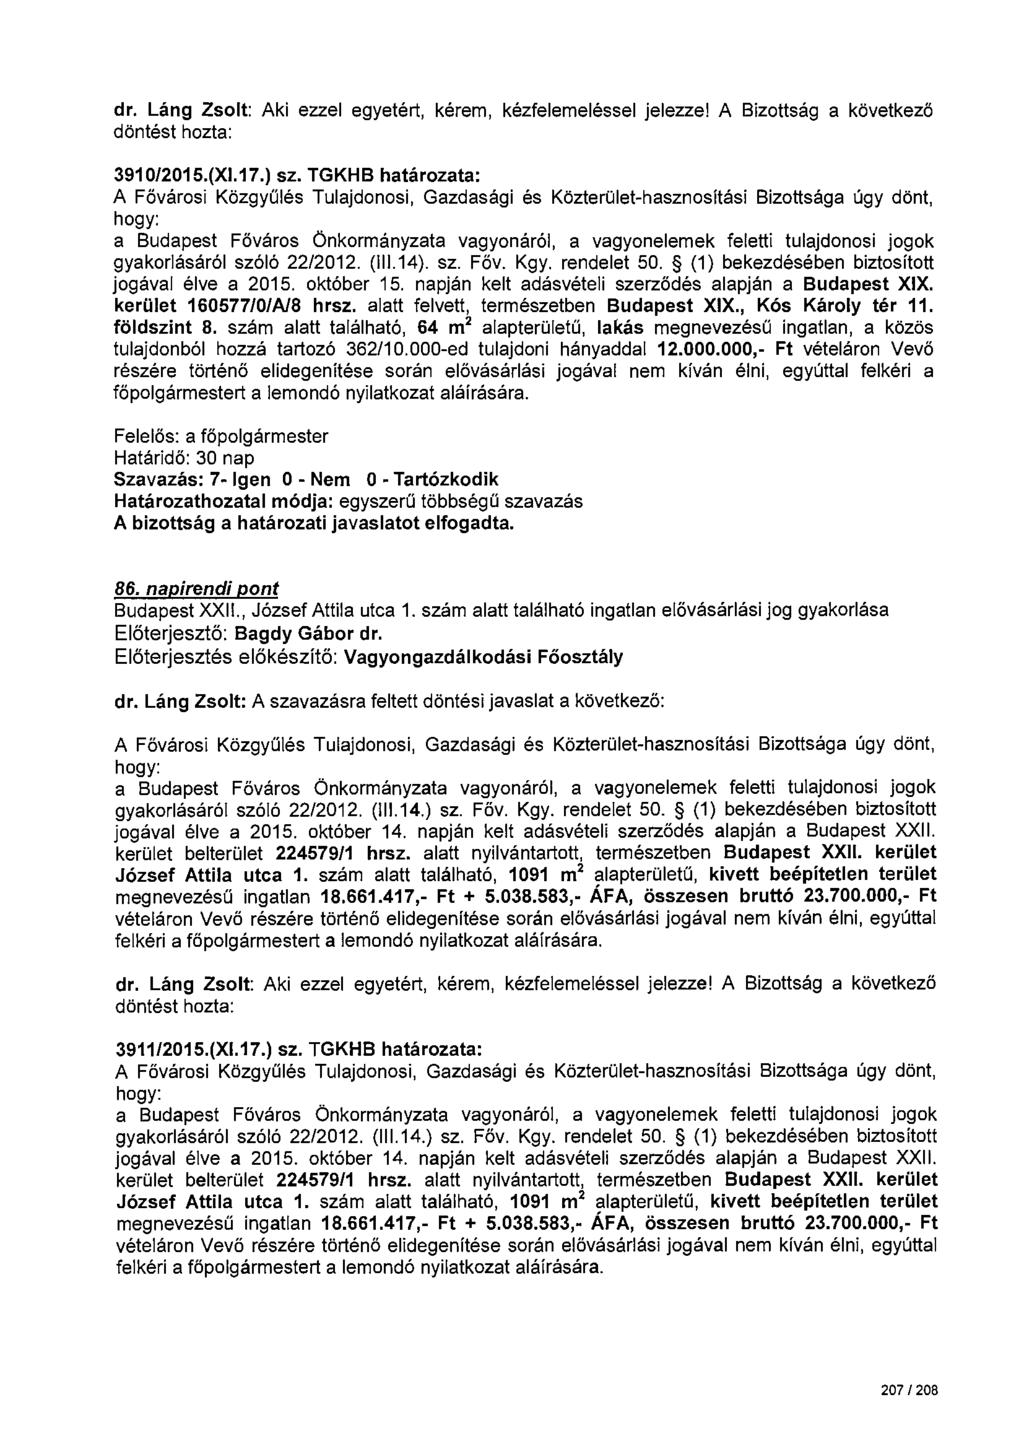 dr. Láng Zsolt: Aki ezzel egyetért, kérem, kézfelemeléssel jelezze! A Bizottság a következö 3910/2015.(Xl.17.) sz. TGKHB határozata: gyakorlásáról szóló 22/2012. (111.14). sz. Főv. Kgy. rendelet 50.